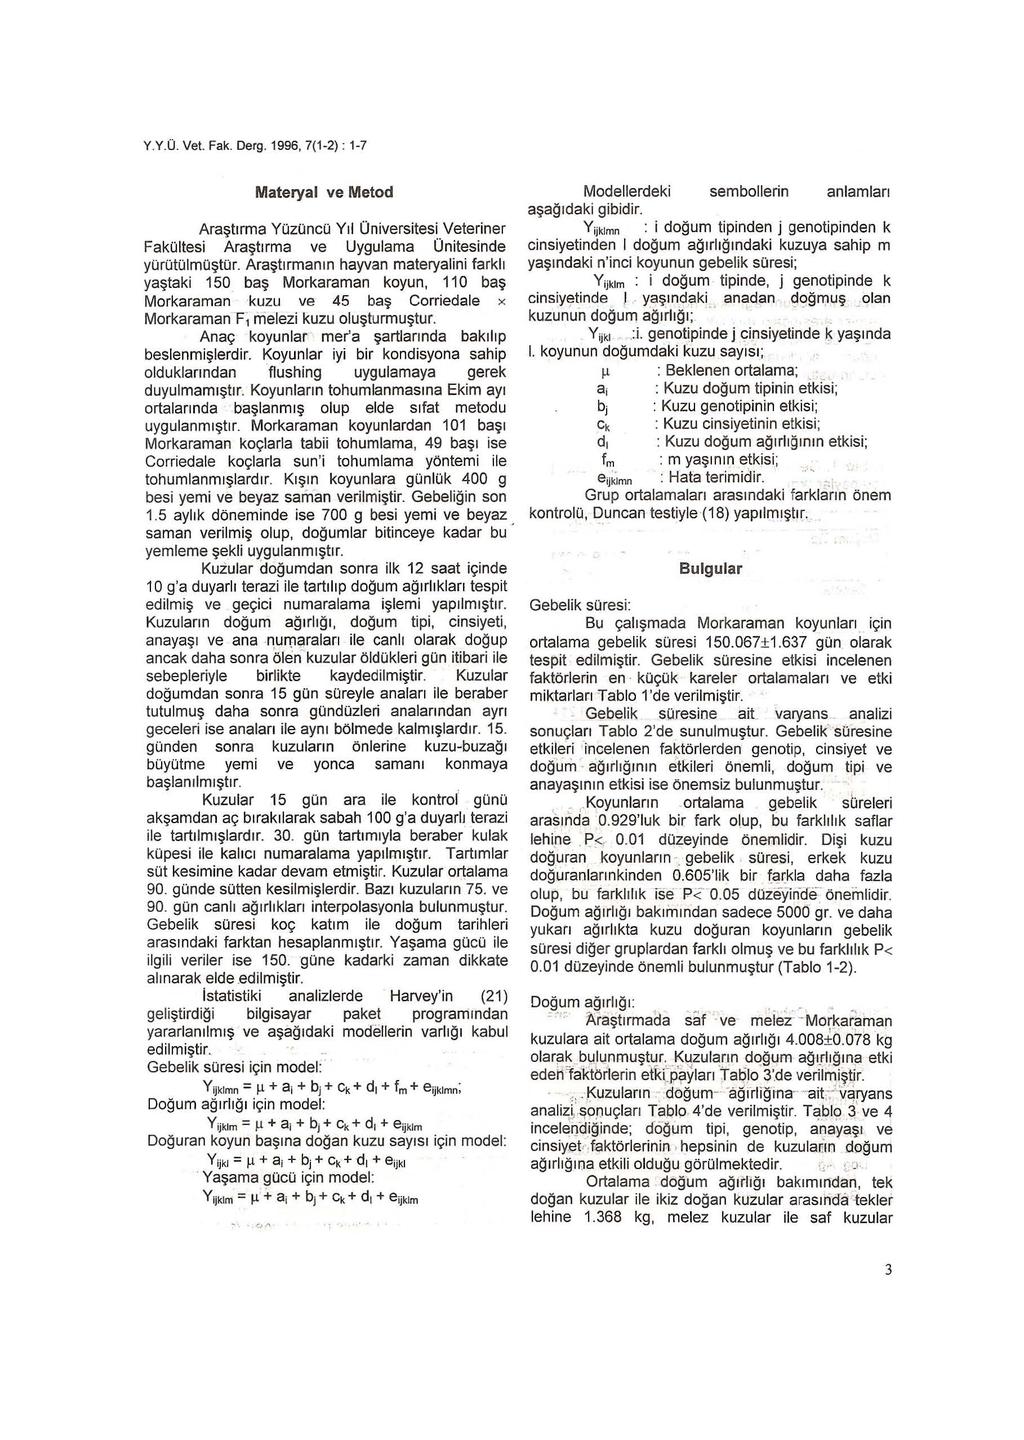 Y.Y.Ü. Vet. Fak. Derg. 1996, 7(1-2) : 1-7 Materyal ve Metod Araştırma Yüzüncü Yıl Üniversitesi Veteriner Fakültesi Araştırma ve Uygulama Ünitesinde yü rütülmüştür.